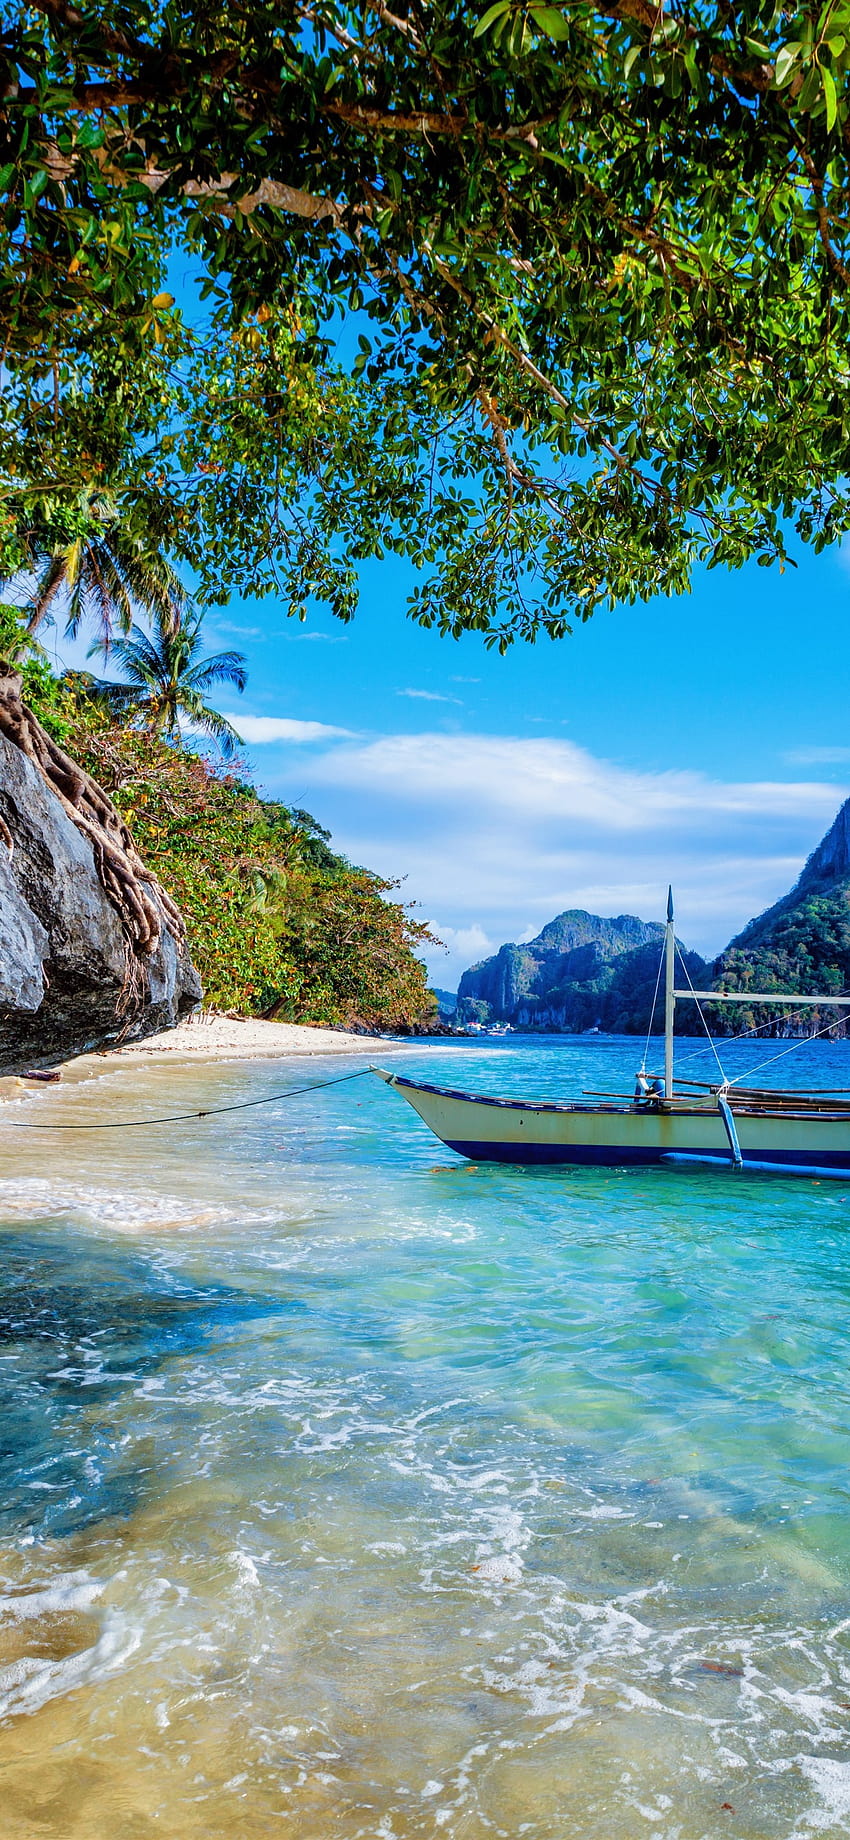 Iphone Filipiny, plaża, morze, łódź, drzewa, estetyka iphone'a Tapeta na telefon HD